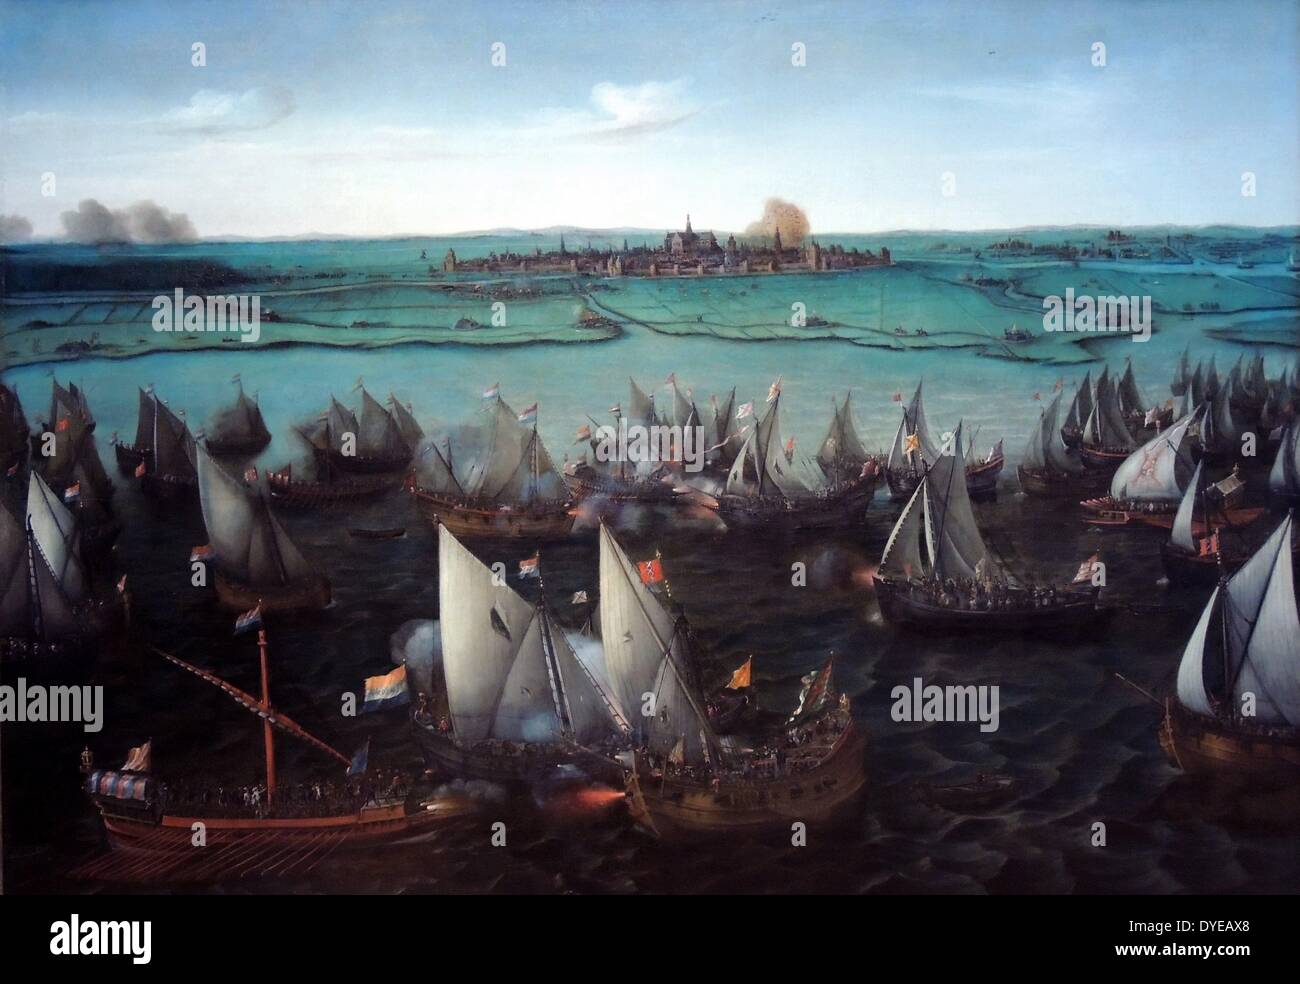 Kampf zwischen niederländischen und spanischen Schiffe auf der Haarlemmermeer von Hendrik Cornelisz Vroom (c.1566-1640) Öl auf Leinwand, in oder nach 1629 bei Haarlem beidseitig mit der niederländischen Revolte im Jahr 1572, der Spanischen Belagerung der Stadt lag. Im Mai 1573, die Rebellen versucht, die Haarlemmermeer, die einen bedeutenden Supply Channel war in die Stadt zu erlangen. Wurden Sie von einer Flotte von Spanischen und Amsterdam Schiffe besiegt (Amsterdam wurde dann immer noch loyal zu Spanien). Haarlem war schließlich gezwungen, die Spanisch zu übergeben. Stockfoto